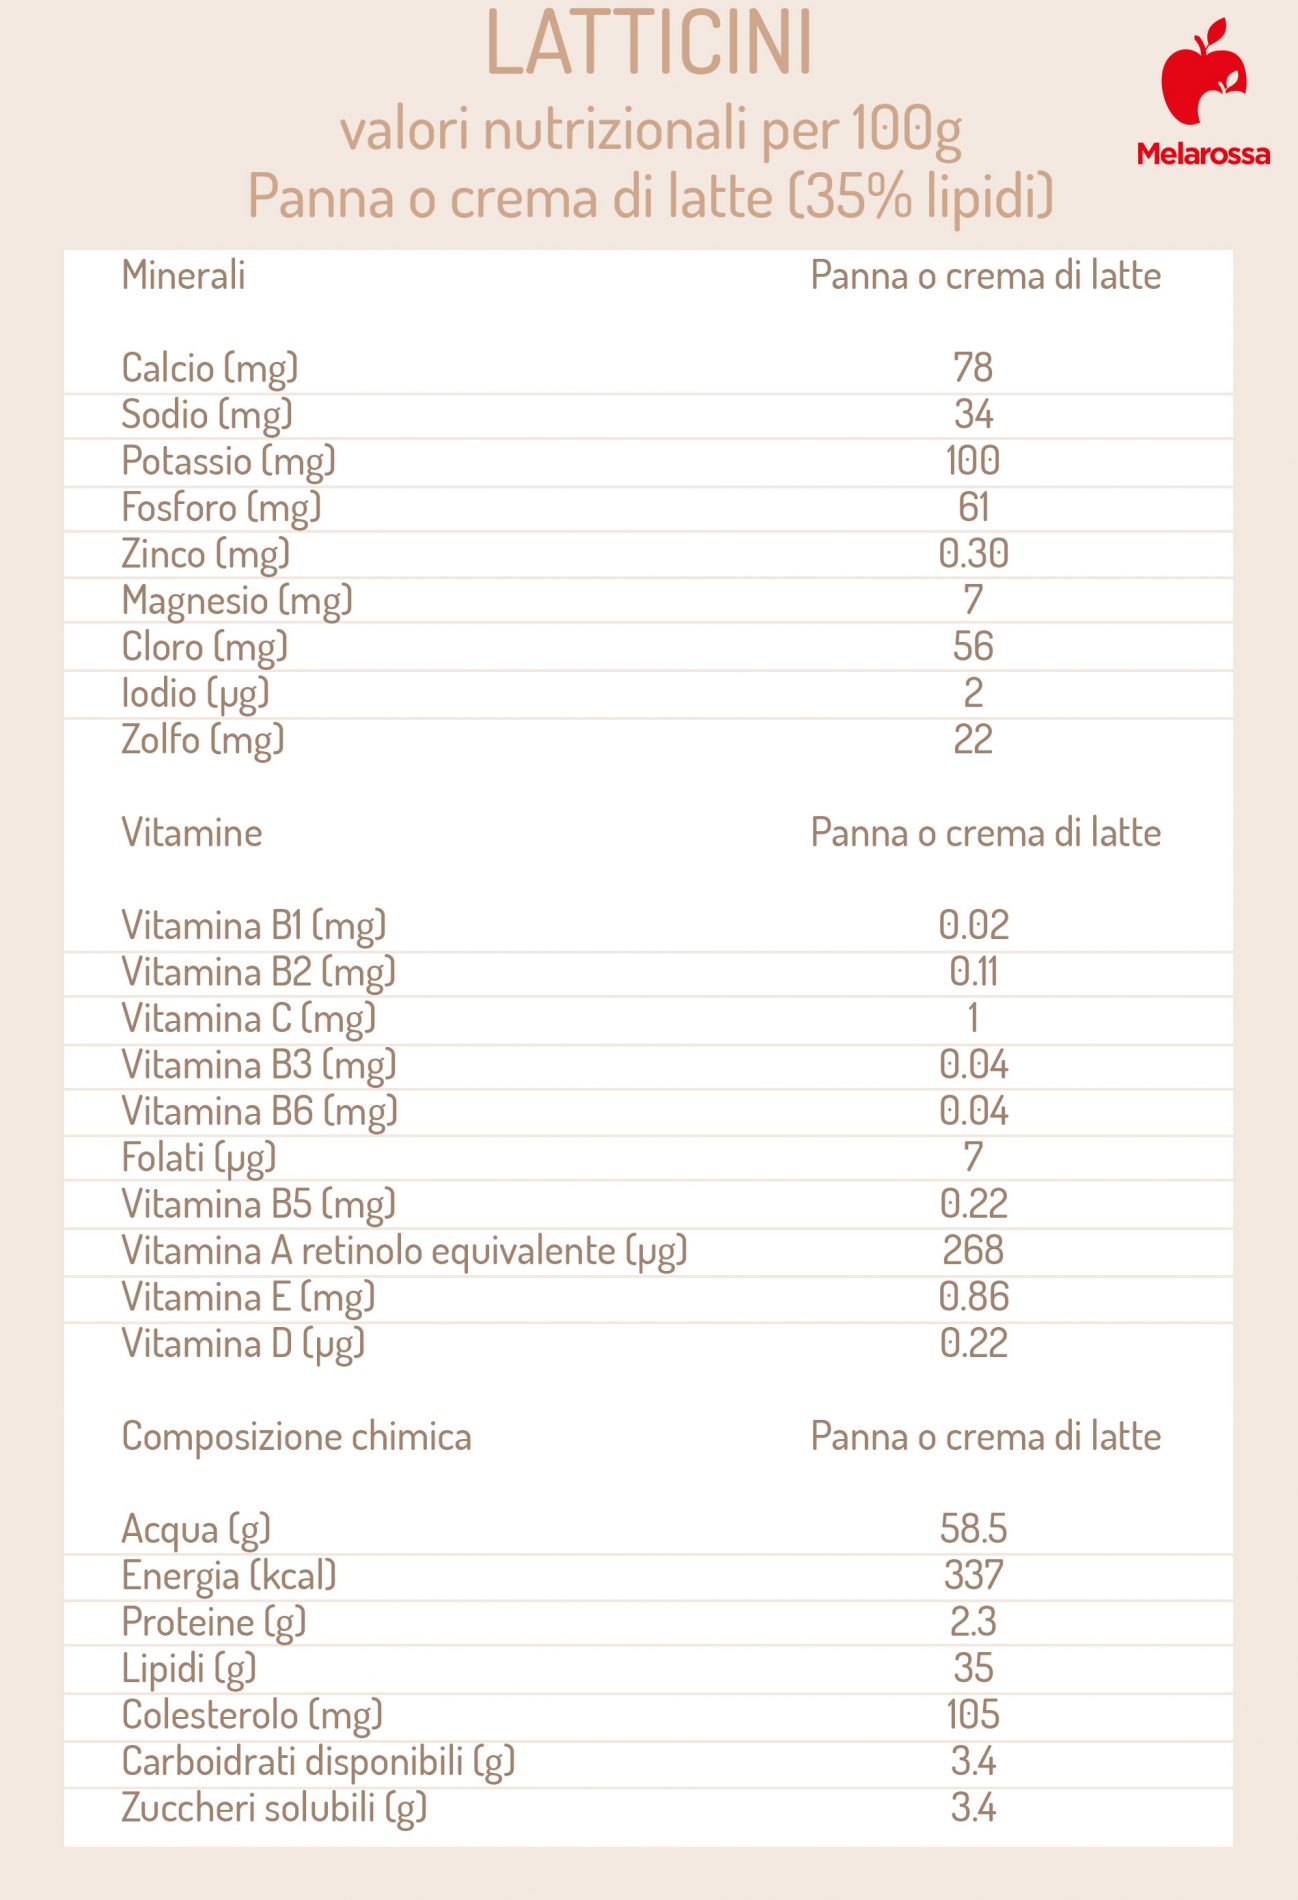 latticini: valori nutrizionali della panna